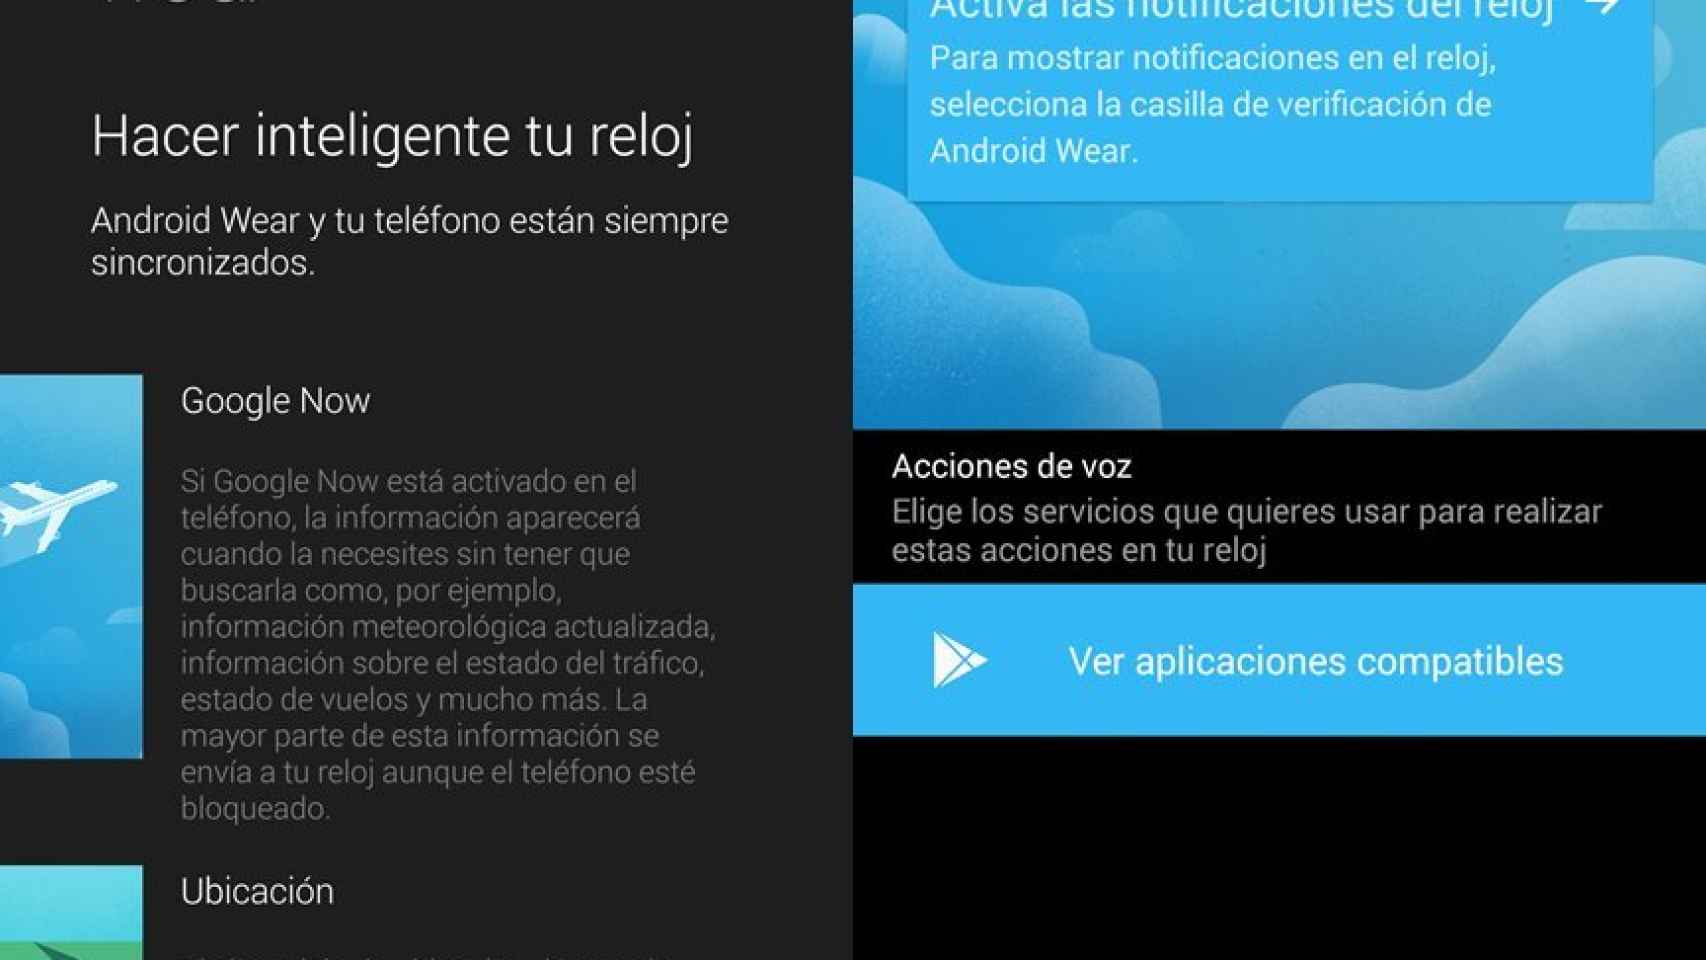 Android Wear ya está listo: aplicación oficial y sección de apps compatibles en Google Play